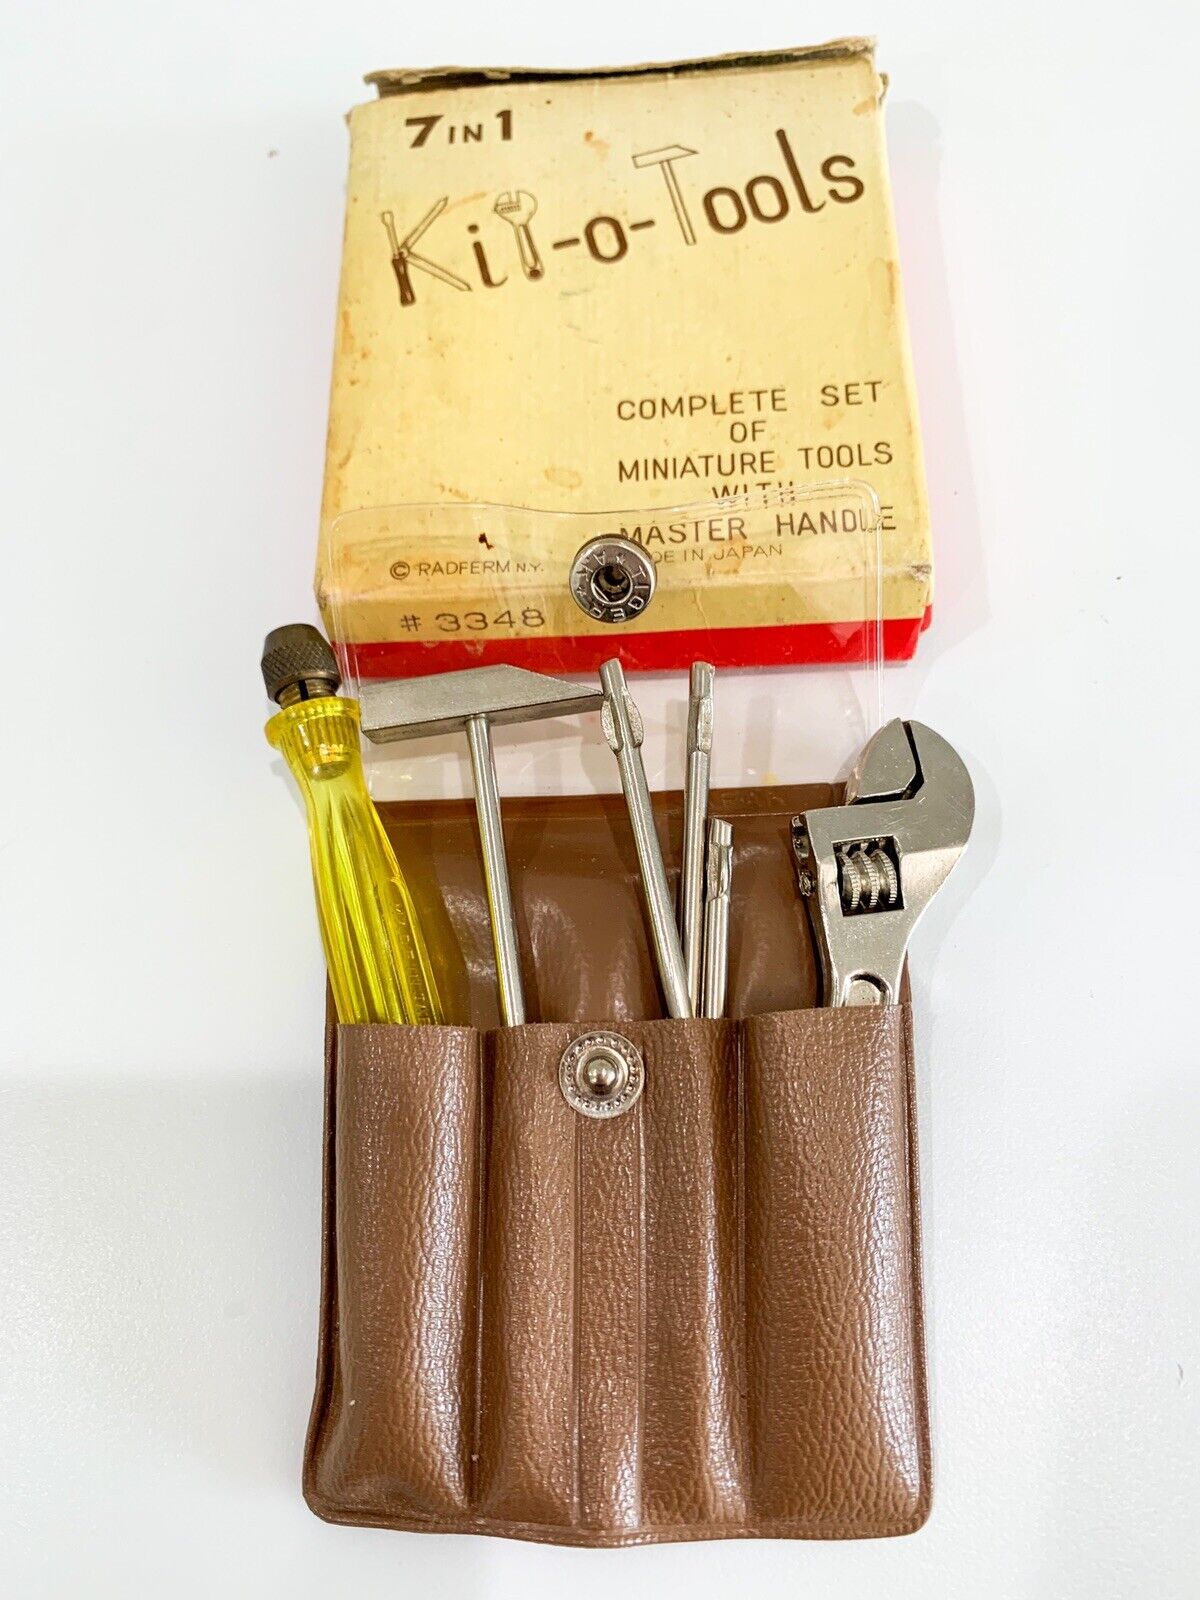 Kit-o-Tools Small Miniature Tool Set Vintage JAPAN MADE   #3348   5n6